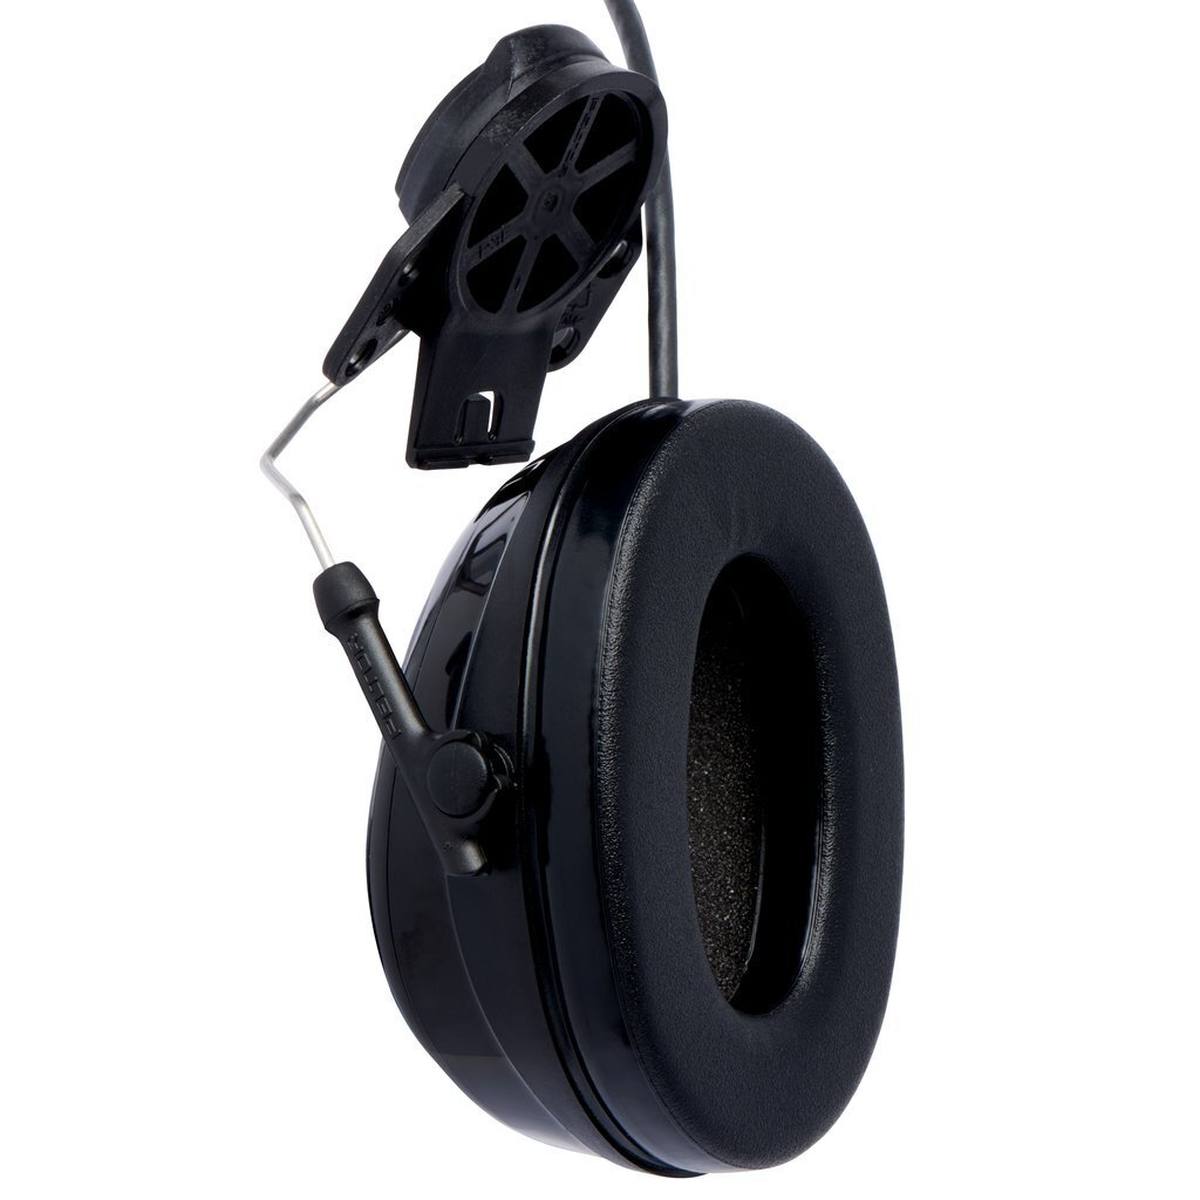 3M PELTOR ProTac III Slim gehoorbeschermingsheadset, zwart, helmuitvoering, met actieve, niveauafhankelijke dempingstechnologie voor het waarnemen van omgevingsgeluid, SNR=25 dB, zwart